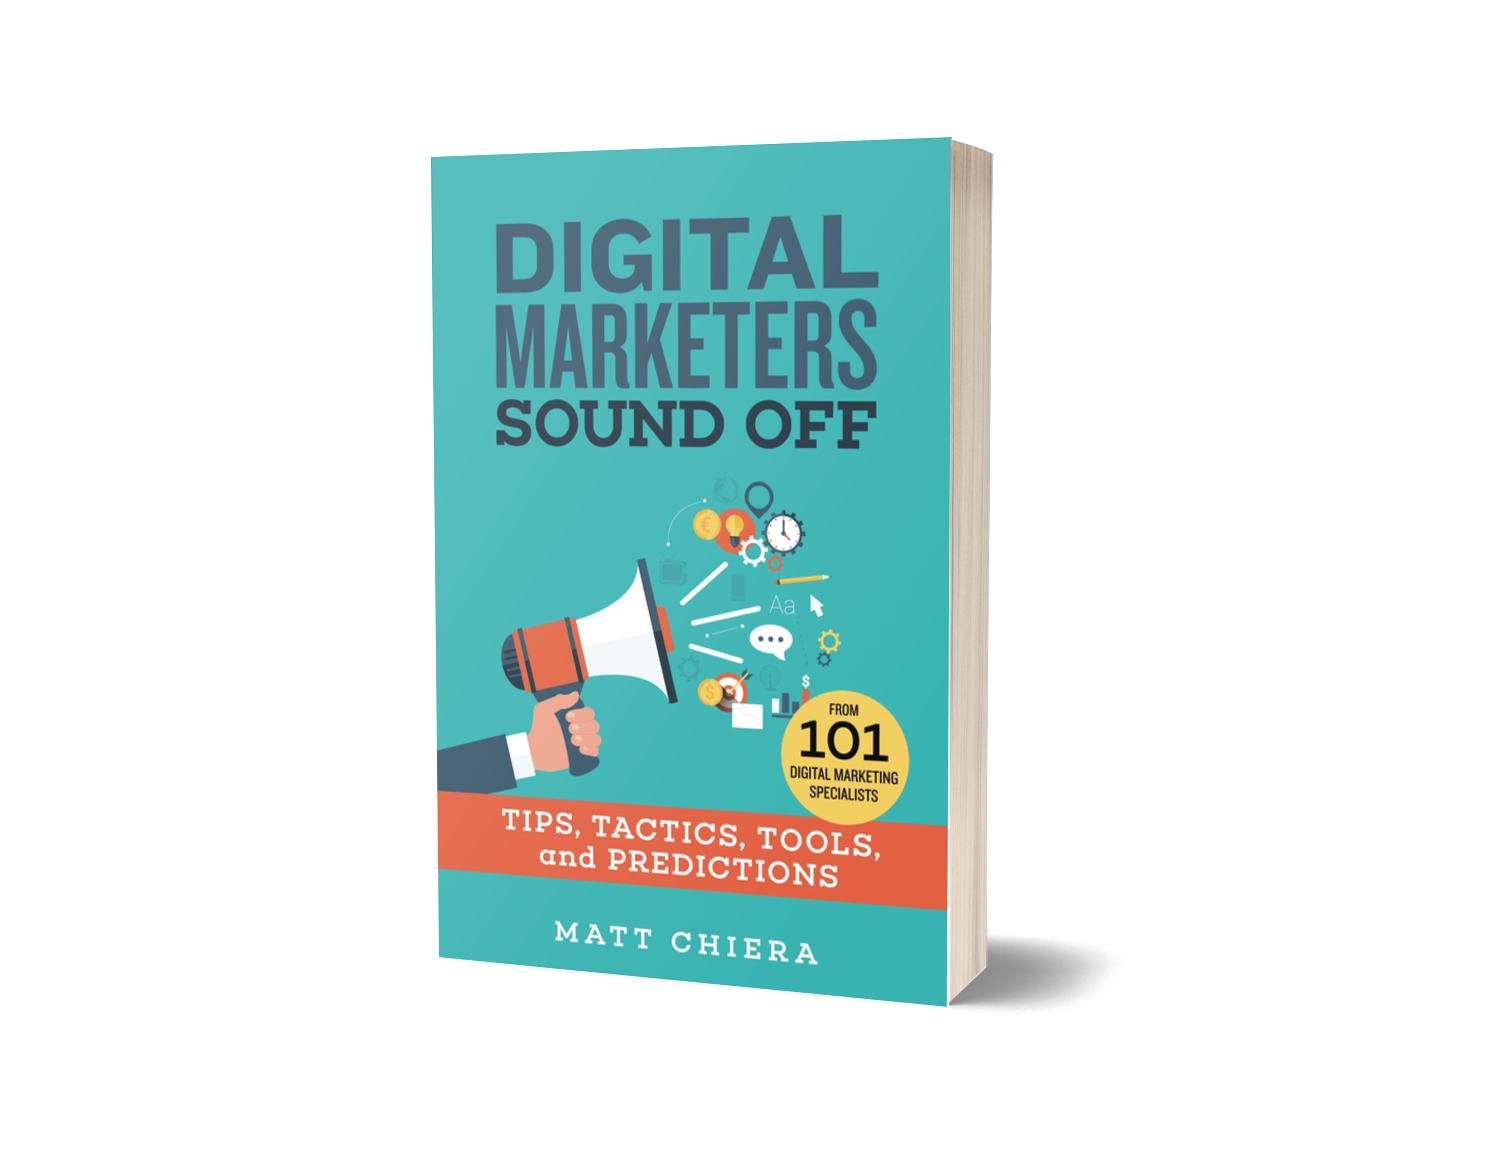 Digital Marketers Sound Off by Matt Chiera